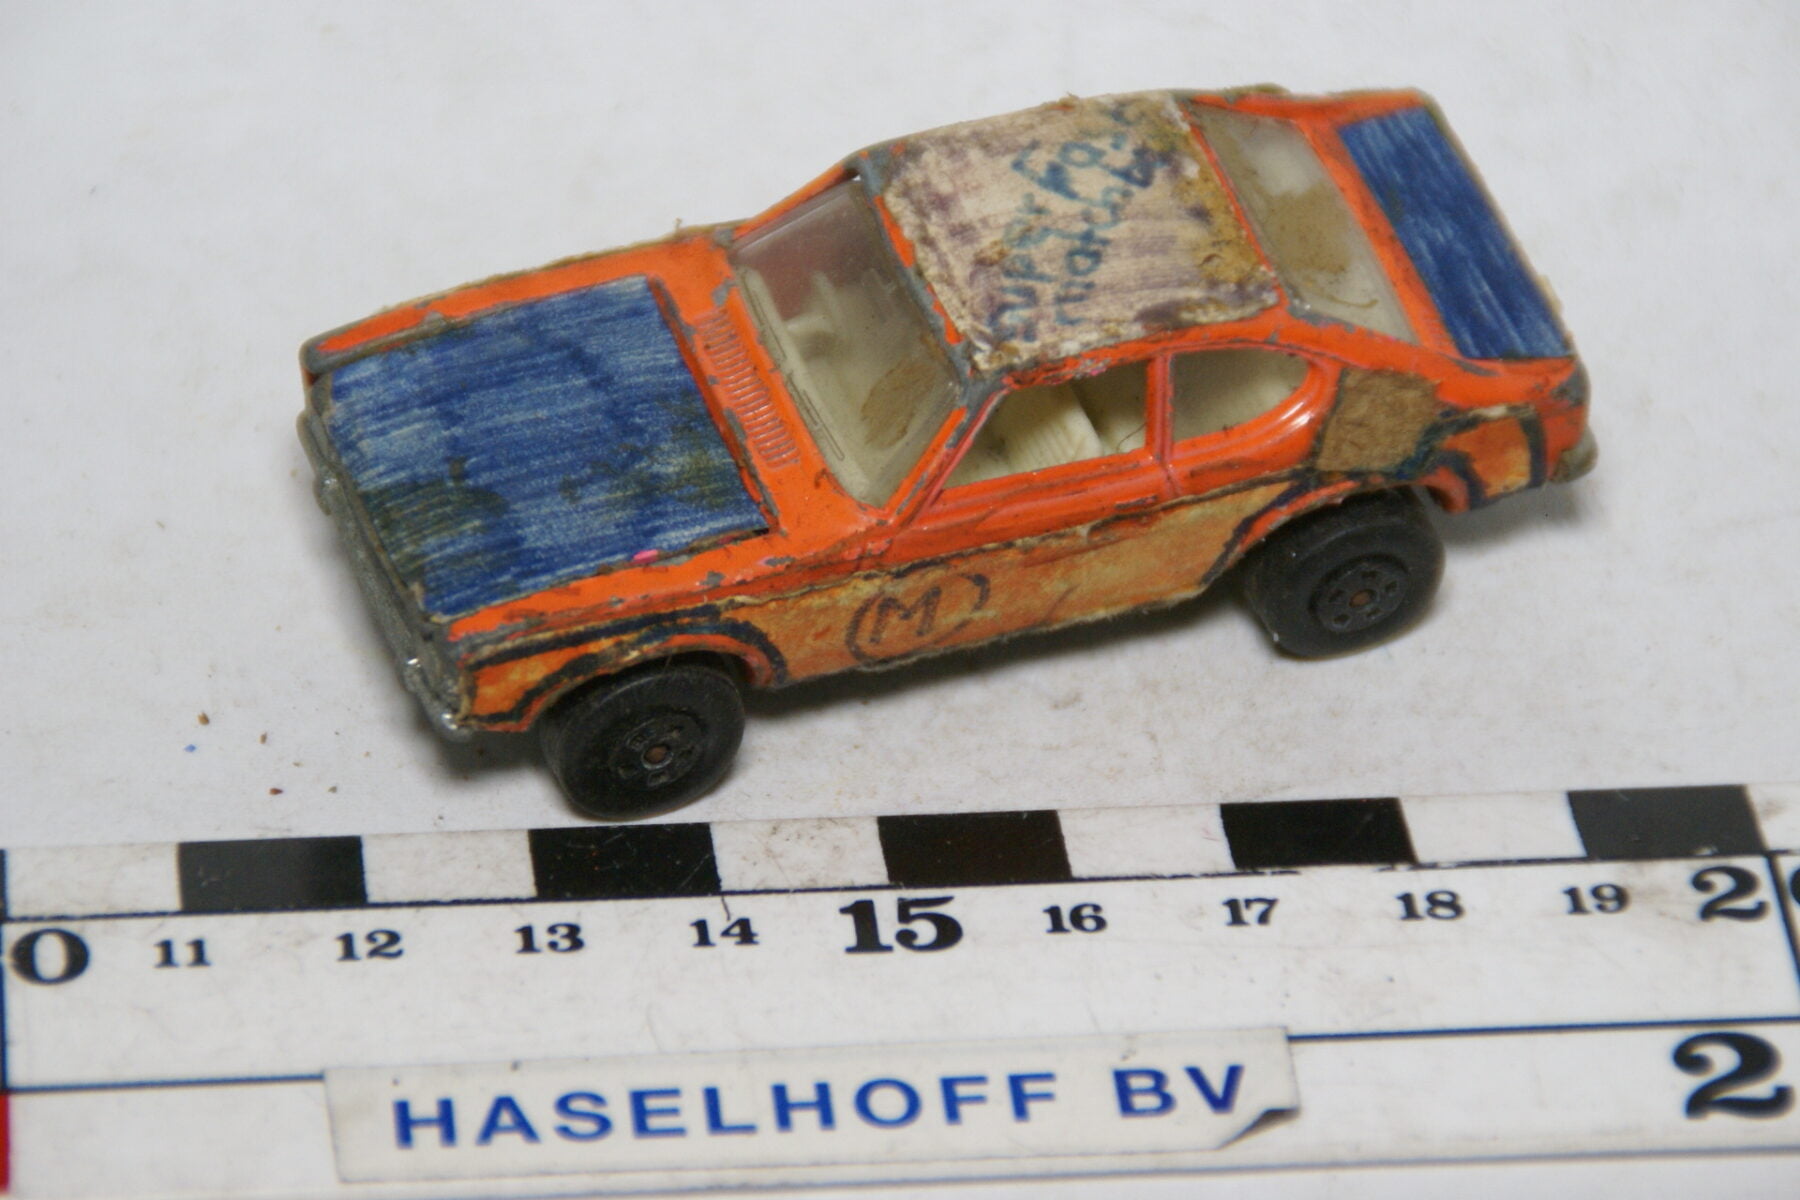 DSC07858 miniatuur 1970 Ford Capri oranje ca 1op70 Matcbox nr 54